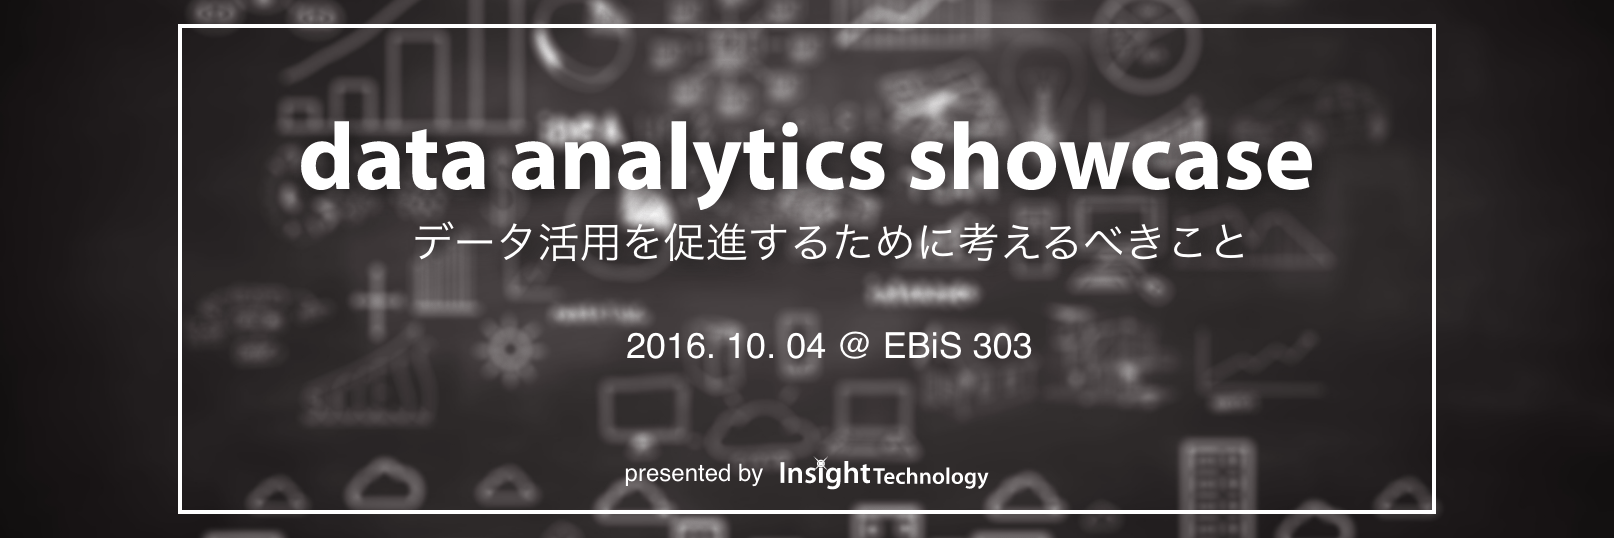 data analytics showcase 2016